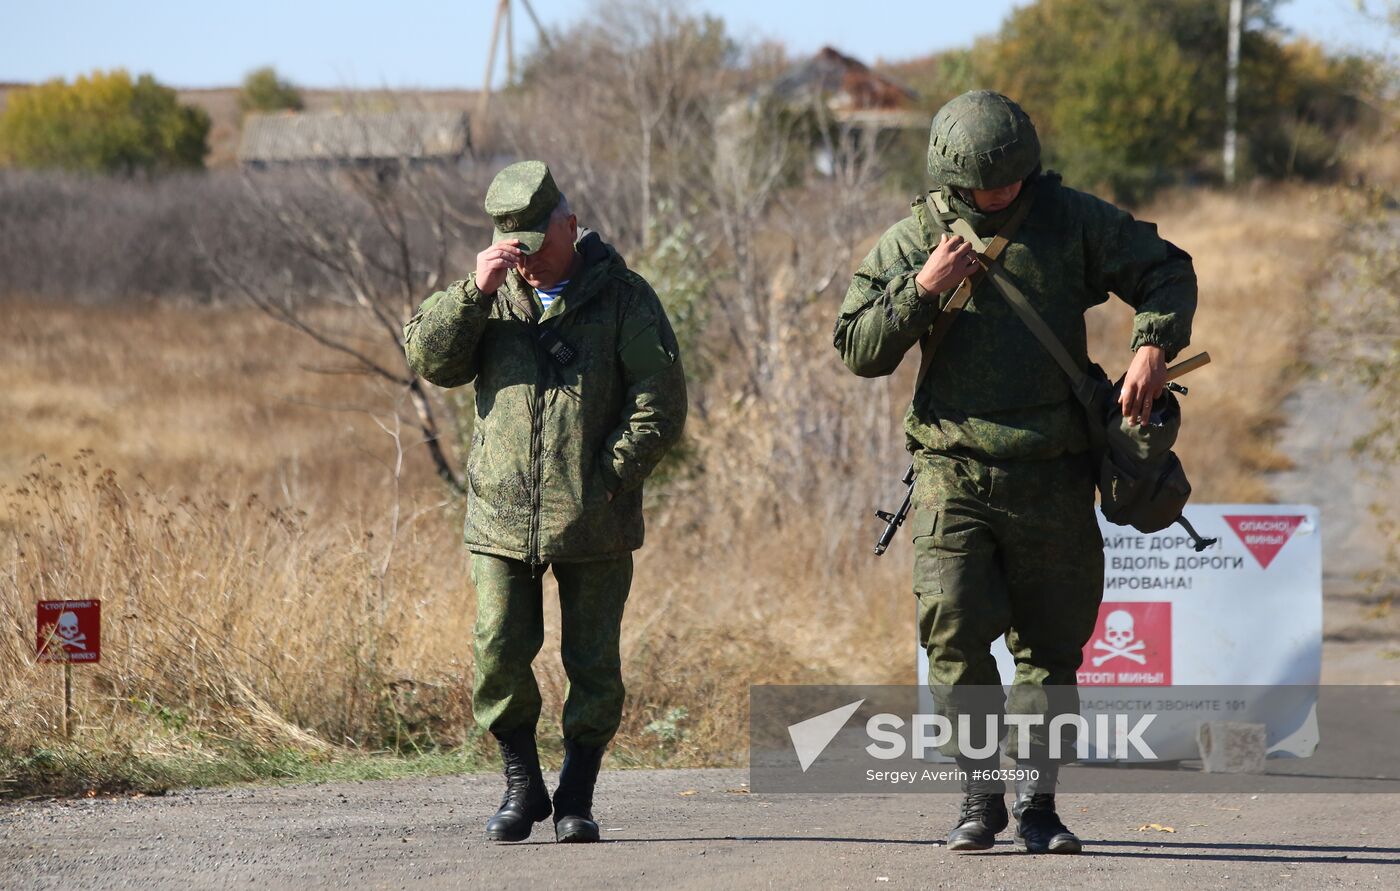 Ukraine DPR LPR Troops Pullout